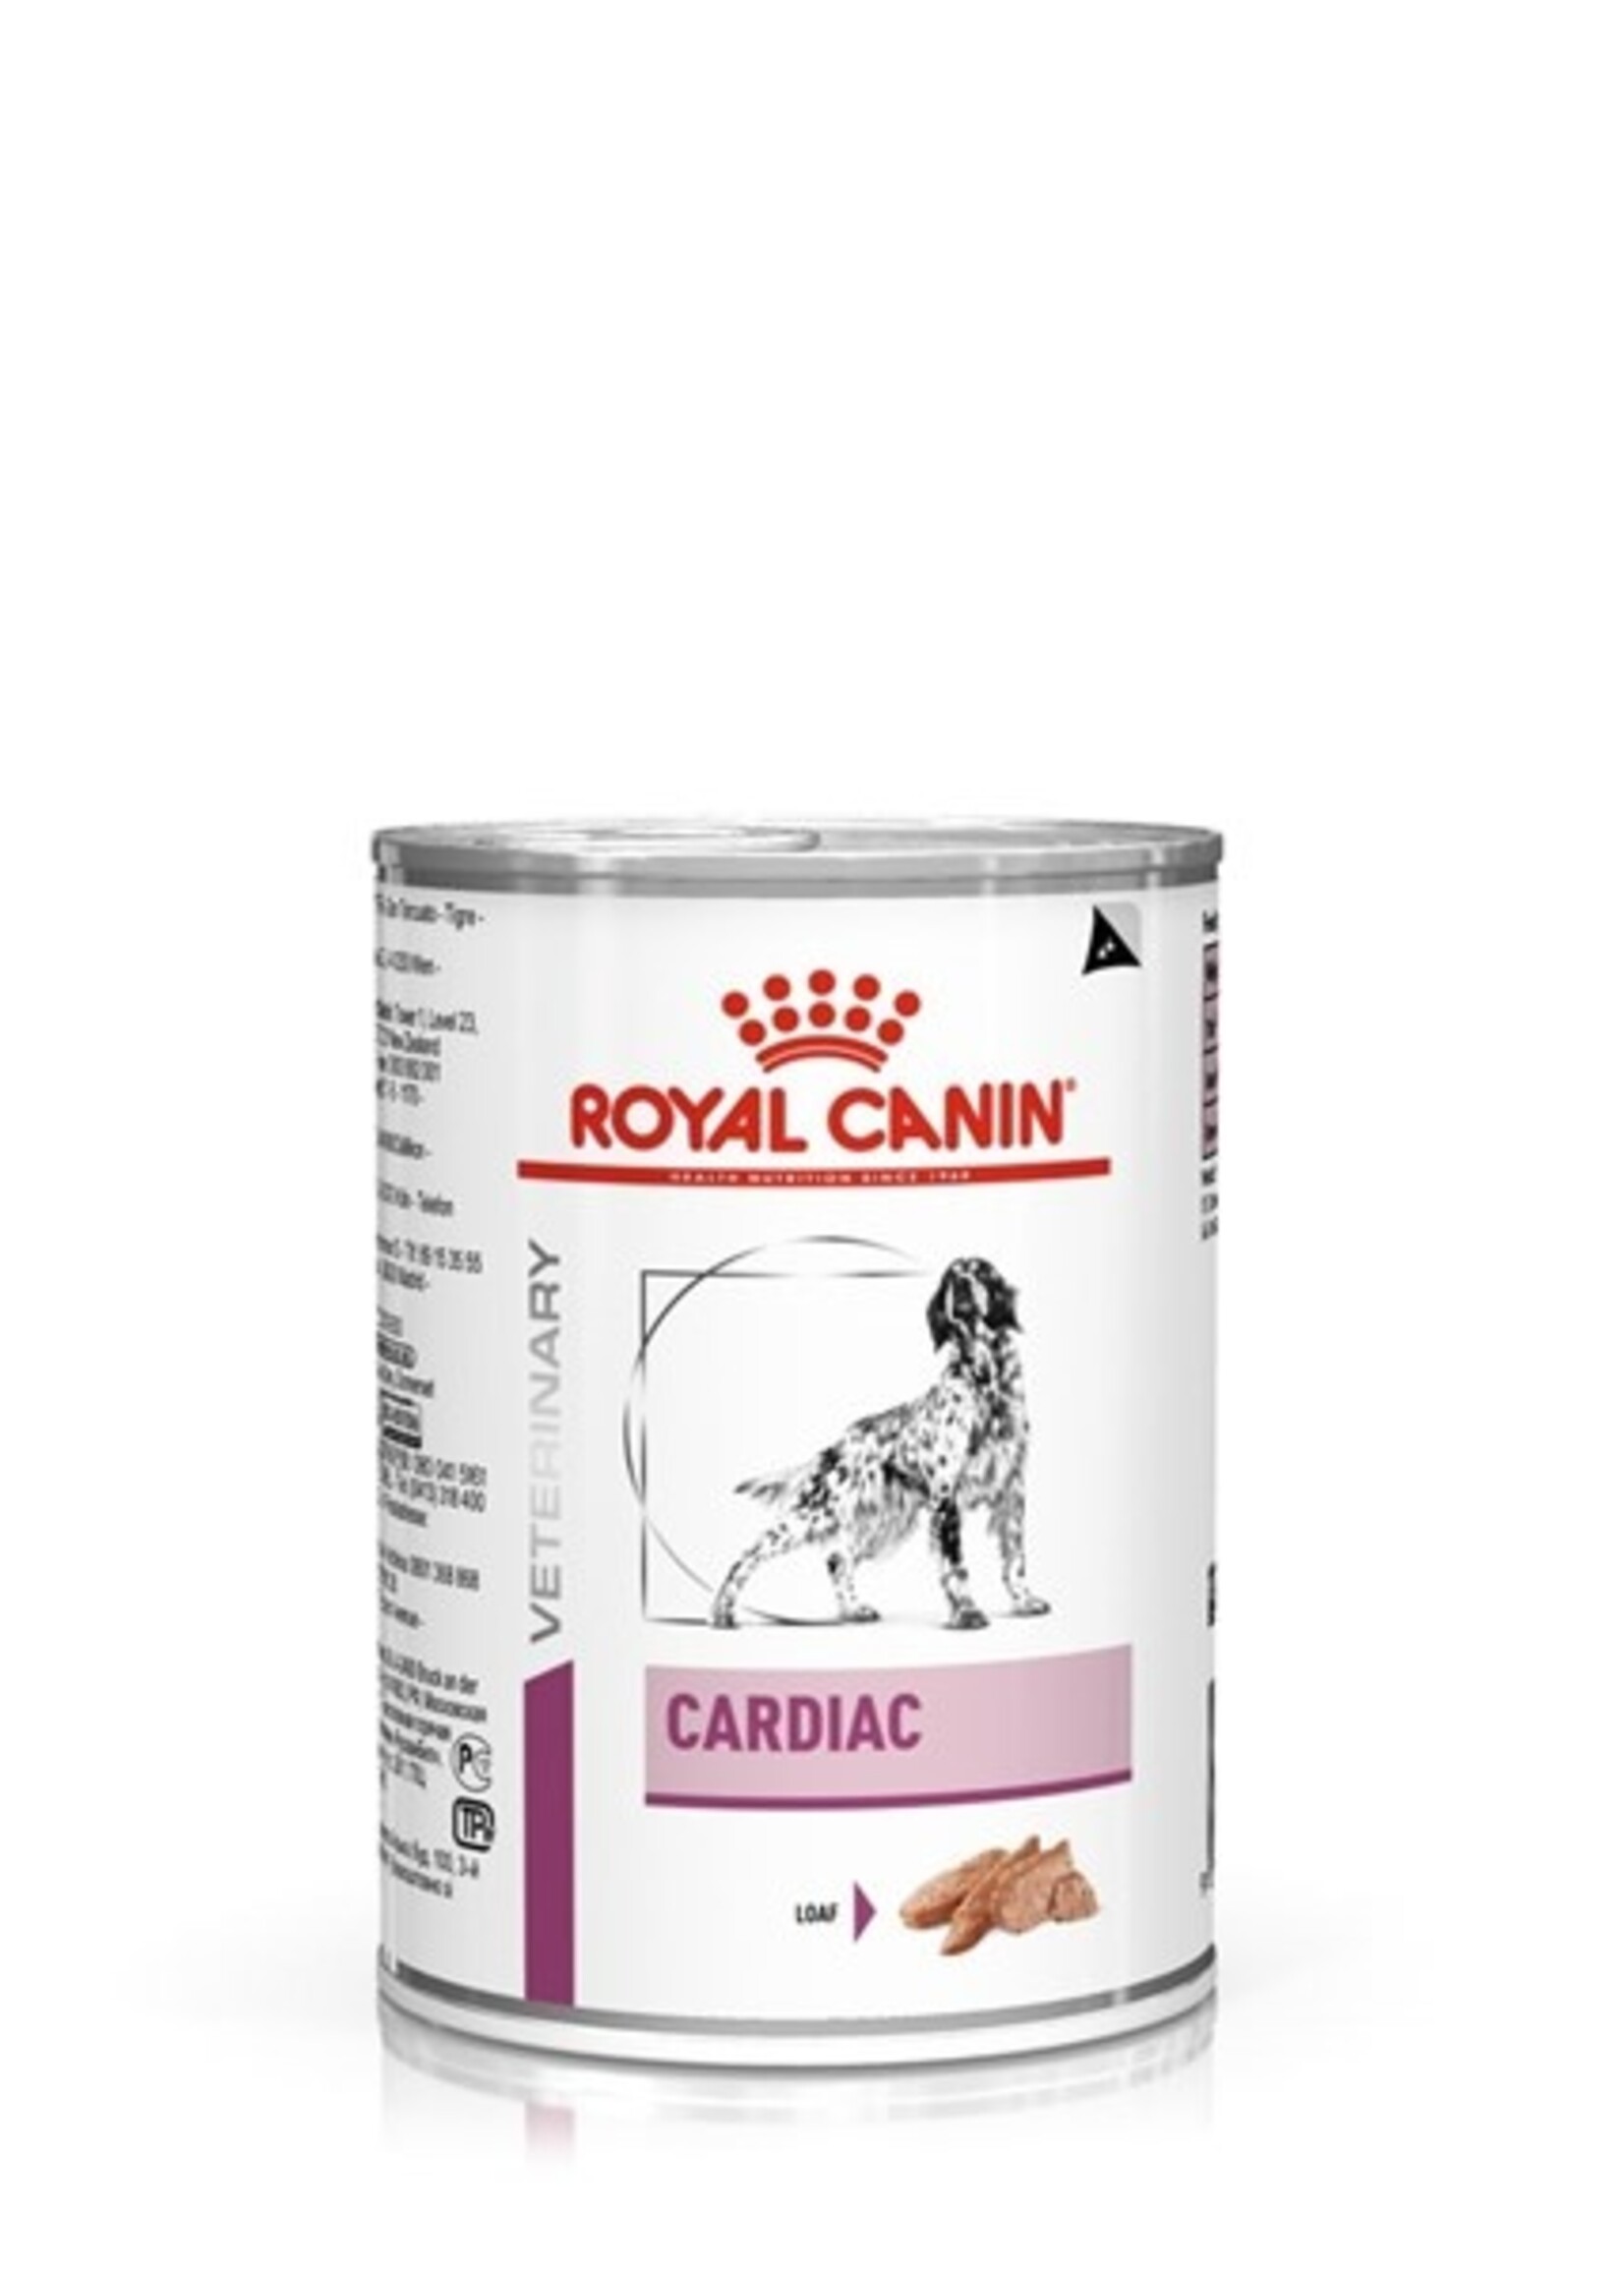 Royal Canin Royal Canin Vdiet Cardiac Hond 12x410gr